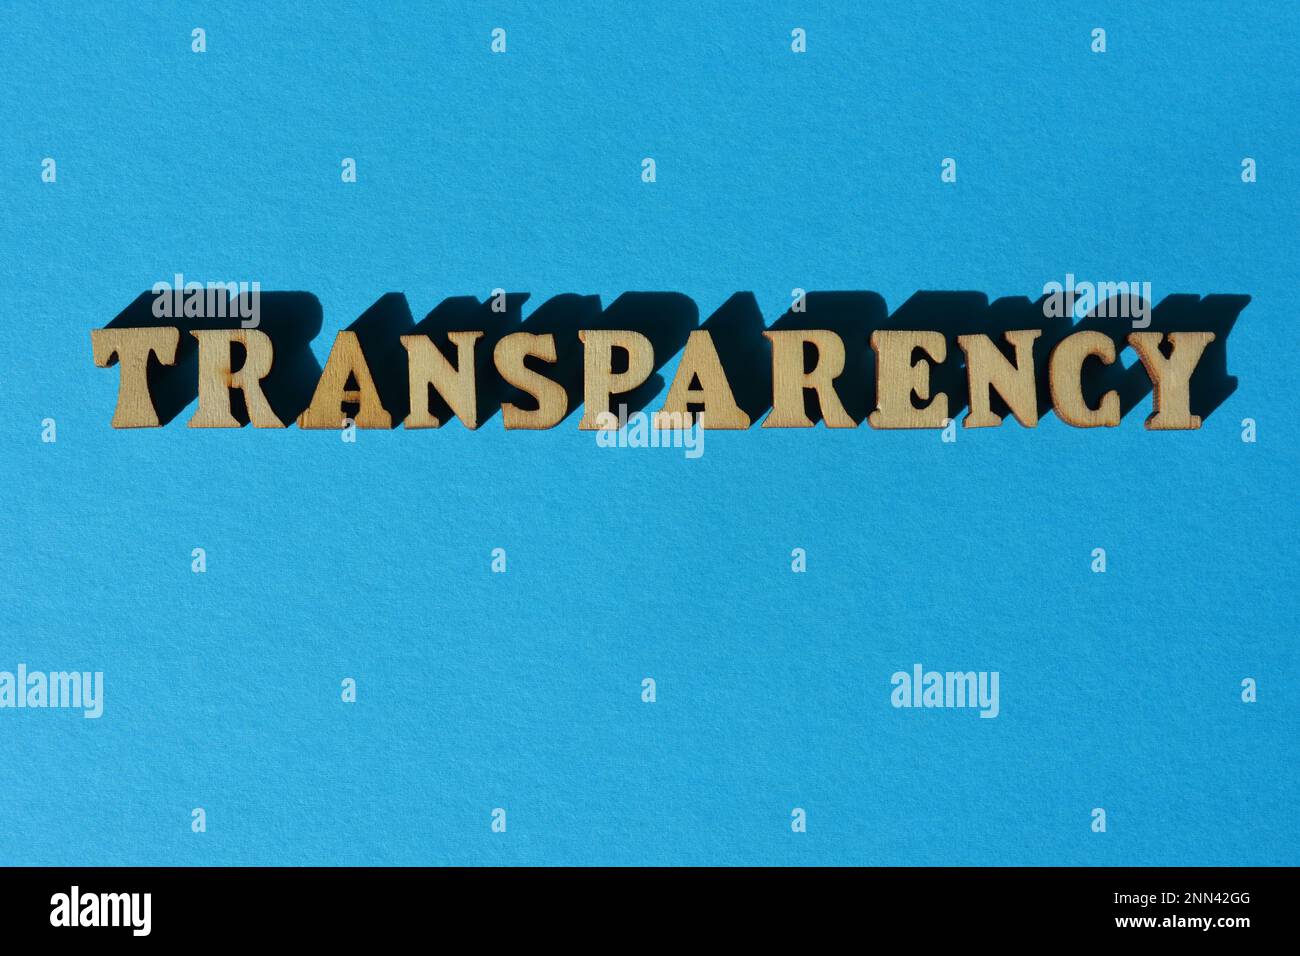 Transparence, mot en lettres de l'alphabet en bois isolées sur fond bleu Banque D'Images